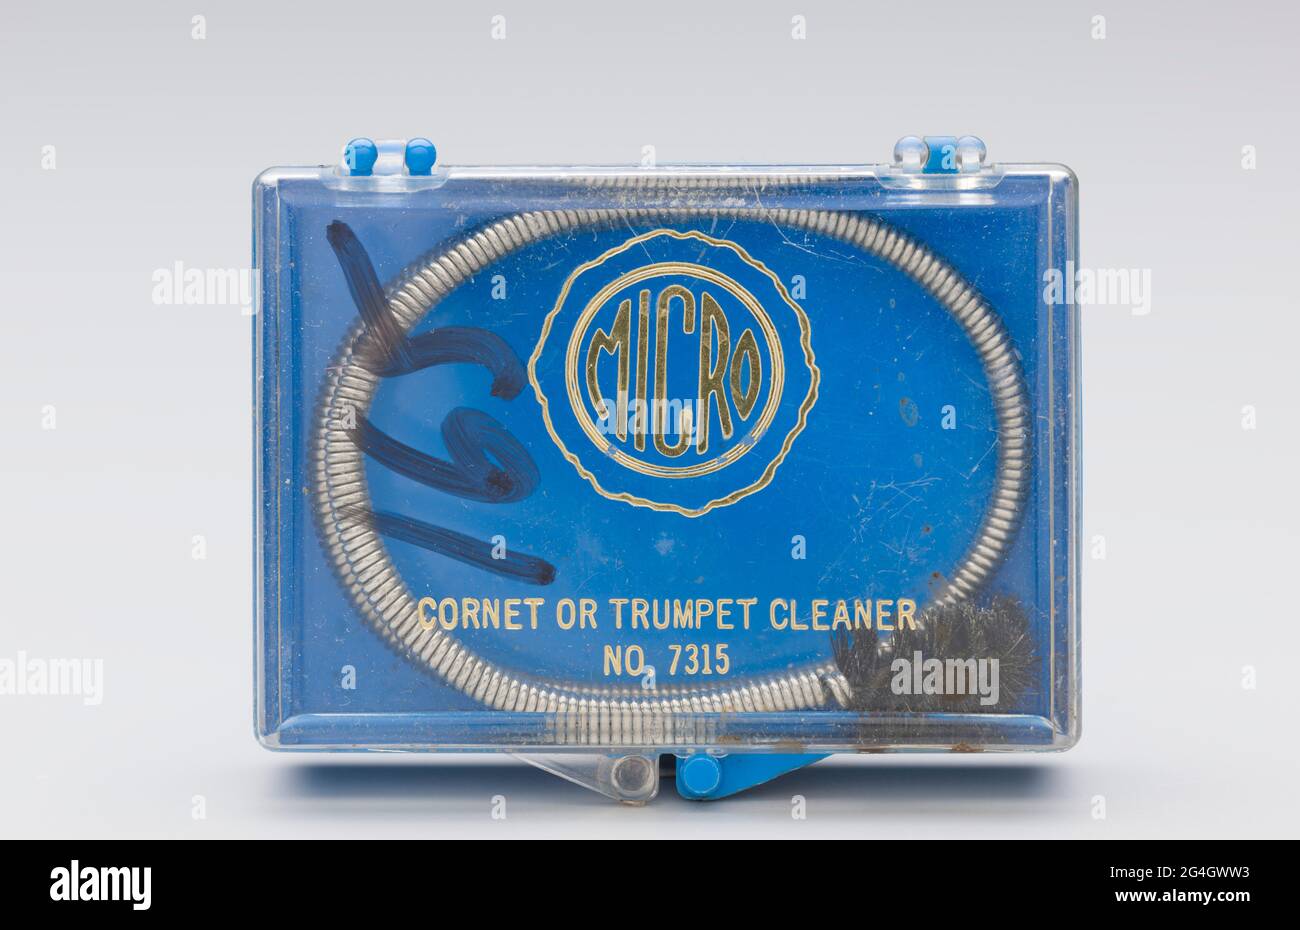 Ein Instrument, das Schlange und ihren Behälter reinigt. Die Reinigungsschlange (2013.46.29.1.3a) besteht aus flexiblem Federdraht mit einer schwarzen Nylonborstenbürste an einem Ende. Das Kunststoffgehäuse (2013.46.29.13b) für eine Reinigungsschlange. Das Gehäuse hat einen blauen Sockel und einen durchsichtigen, aufklappbaren Deckel, der vorne einrastet. Der goldene Text auf dem Deckel lautet: [MICRO / CORNET ODER TROMPETENREINIGER / NO. 7315]. Die Zahl [165] wurde in einem schwarzen Marker auf dem linken Drittel des Deckels angegeben. Stockfoto